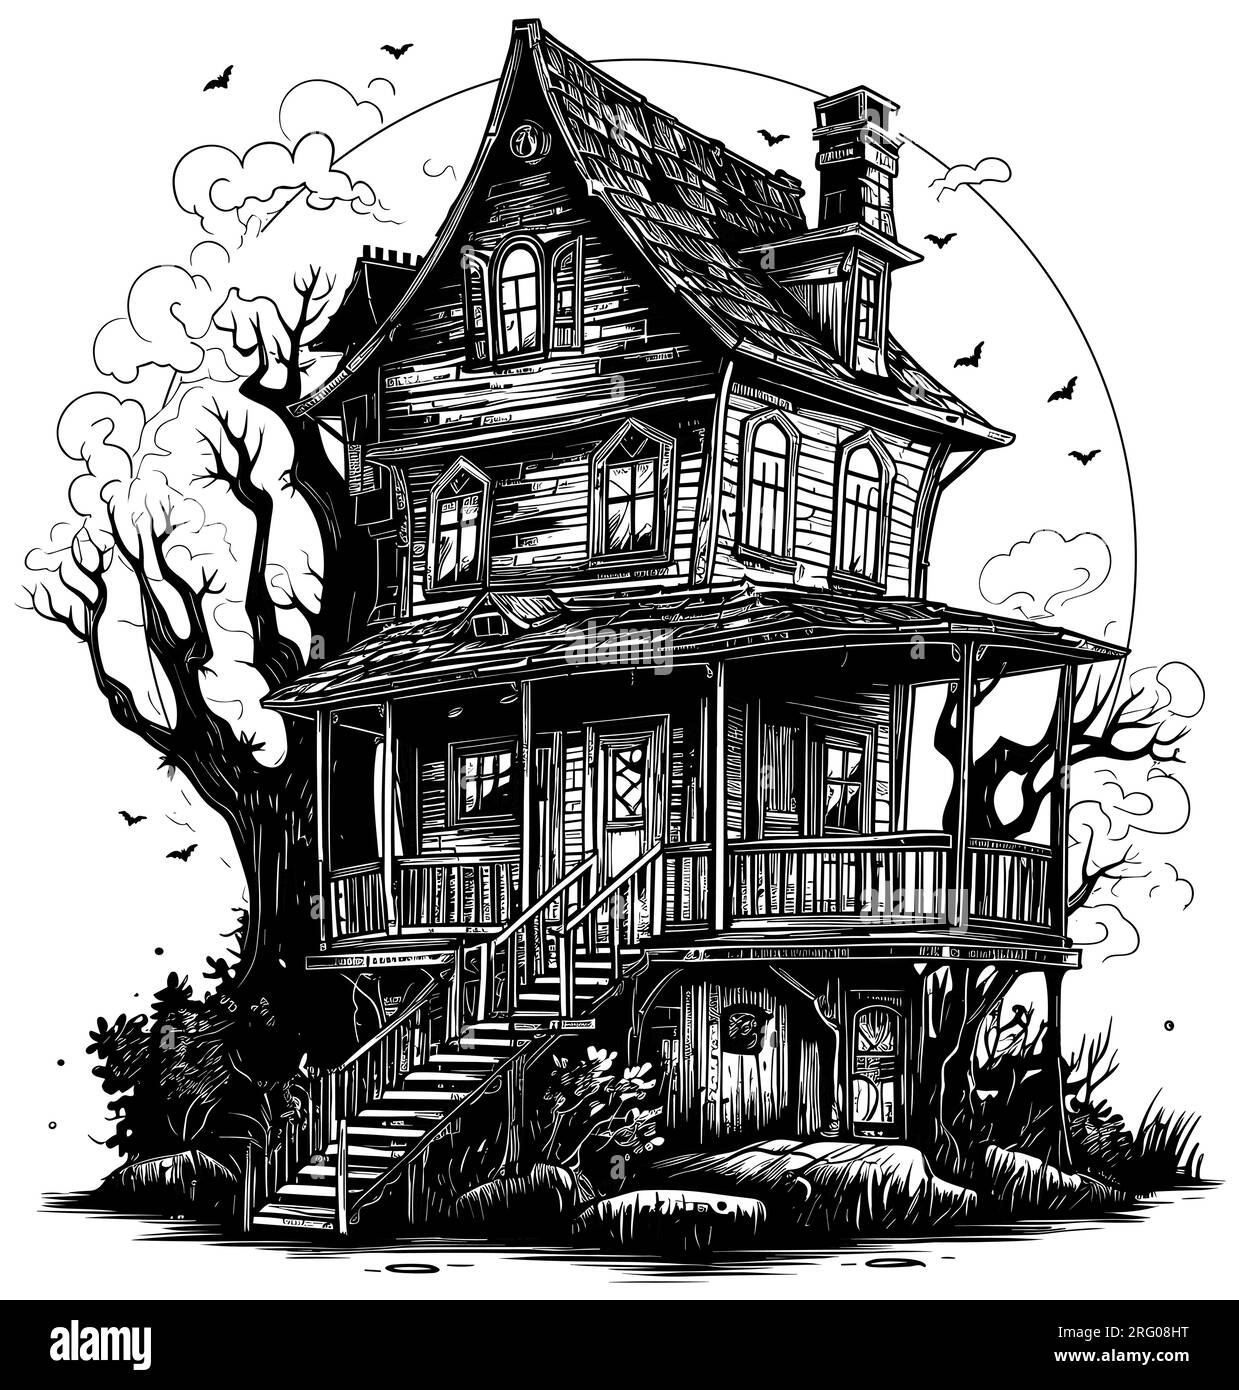 Haunted House Linocut Stock Vector Image & Art - Alamy